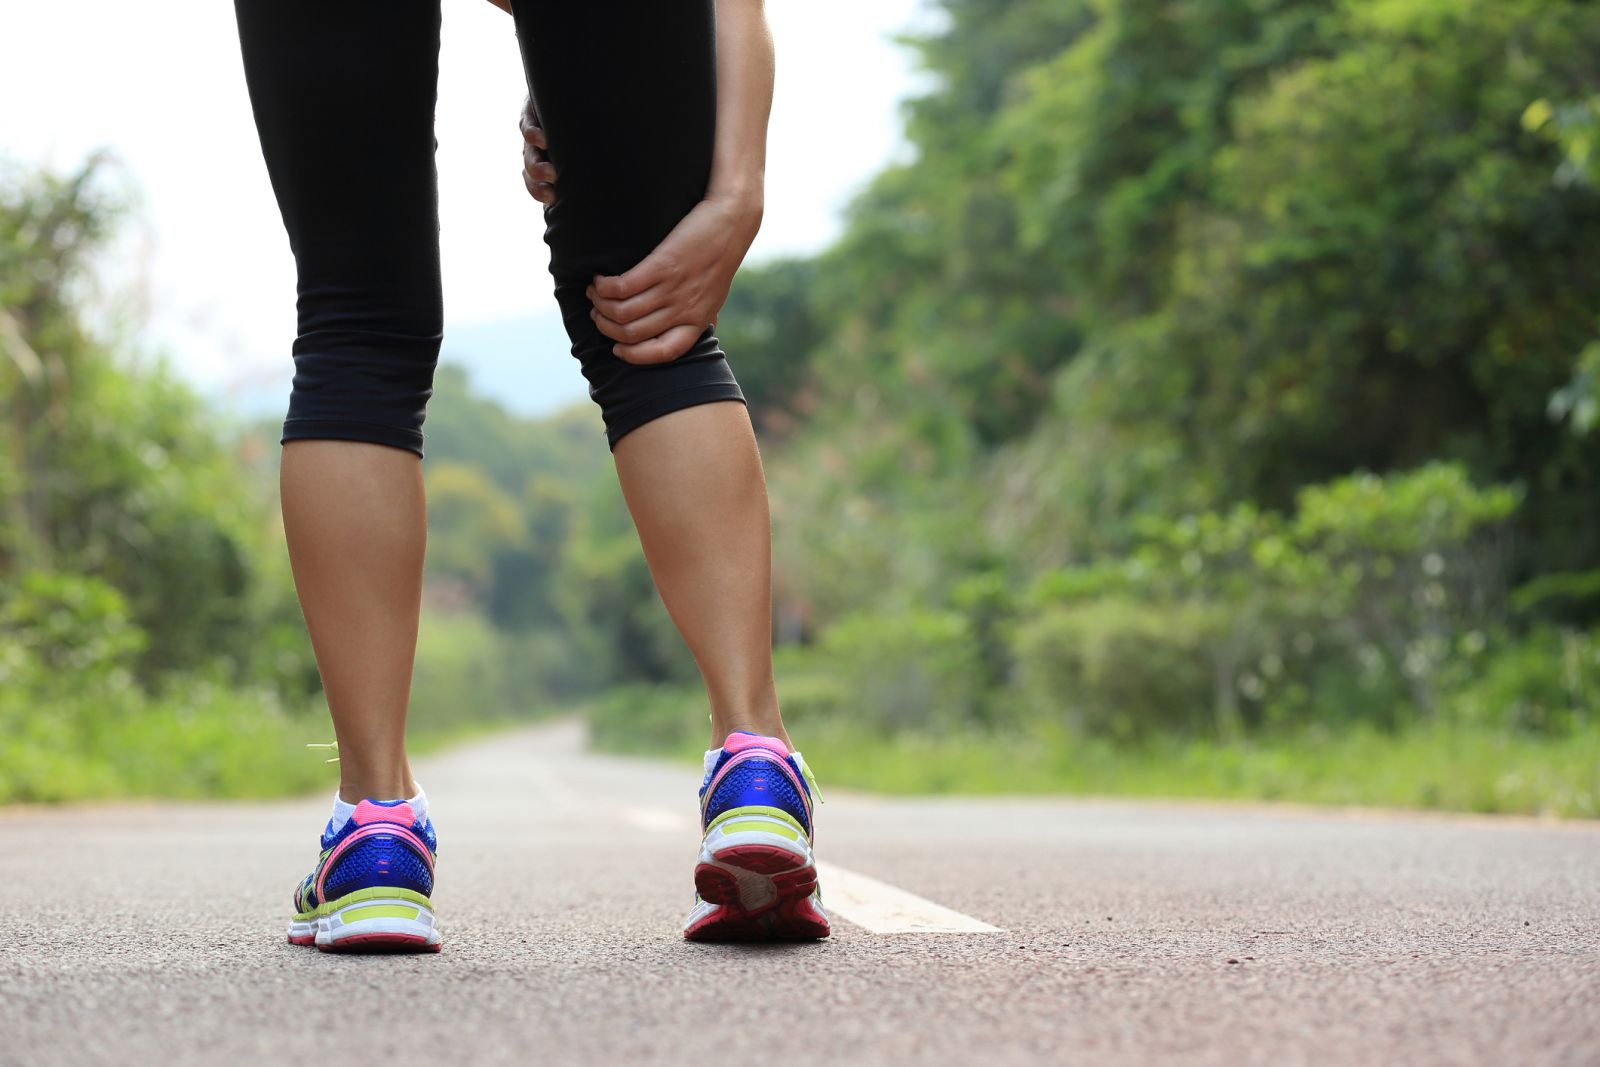 knee pain when walking